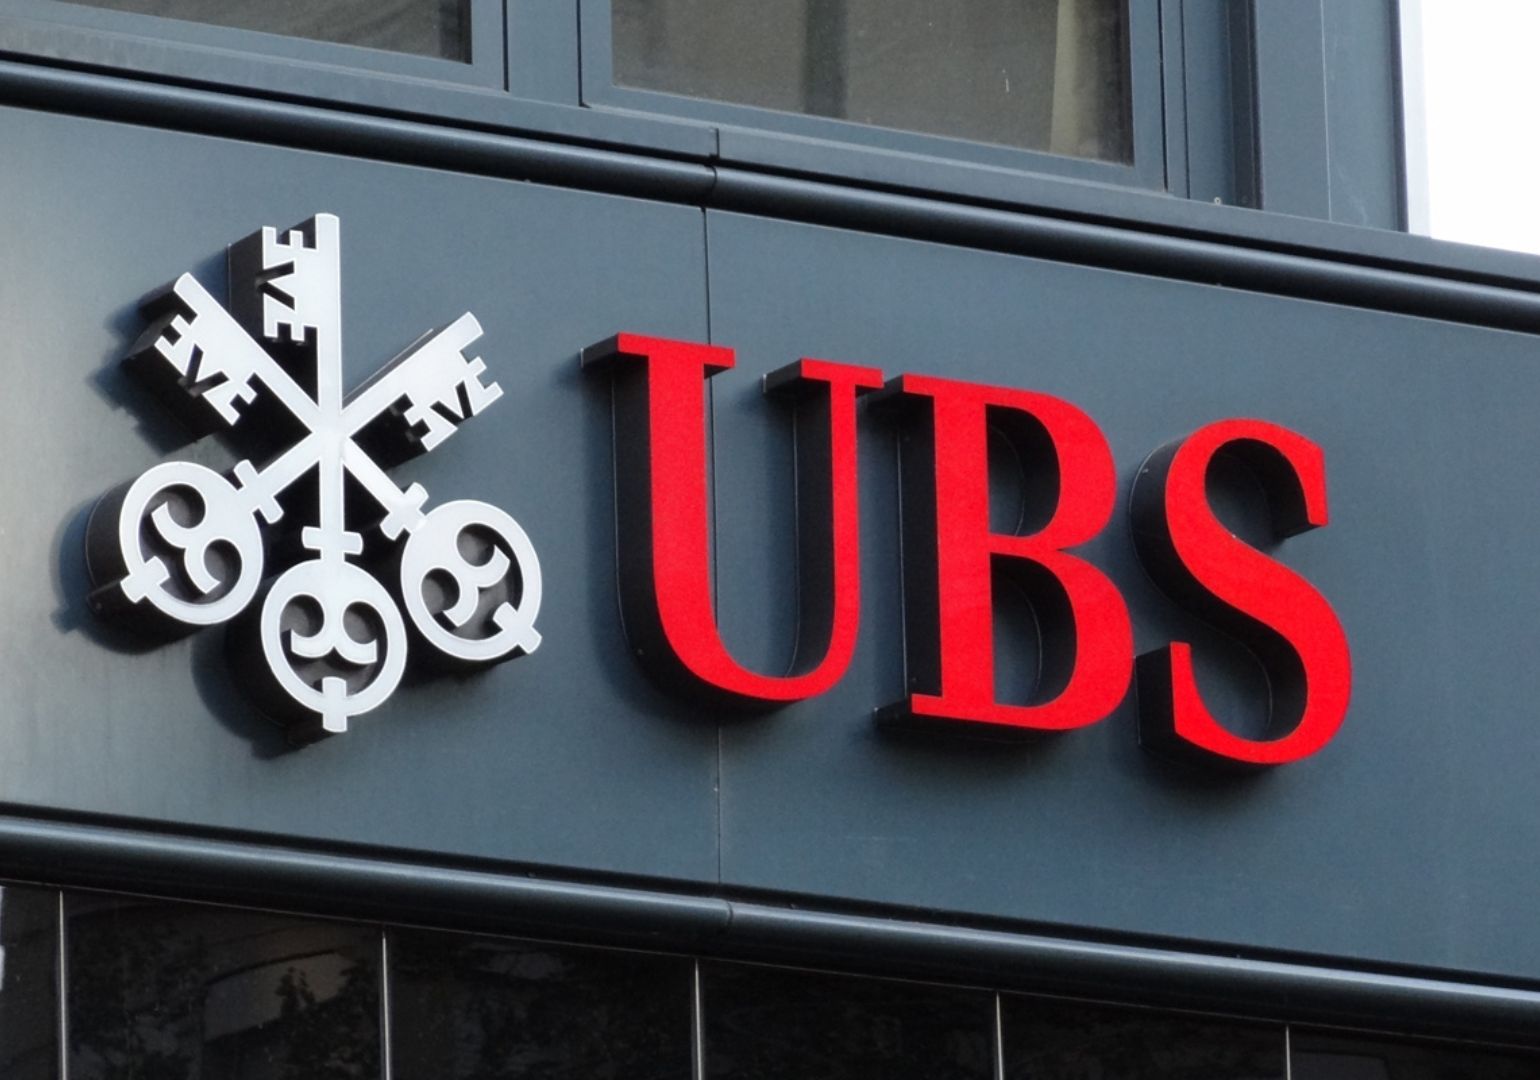 UBS-მა Credit Suisse-ის ინტეგრაციის პირველი ფაზა დაასრულა | რა გეგმები აქვს ბანკს?